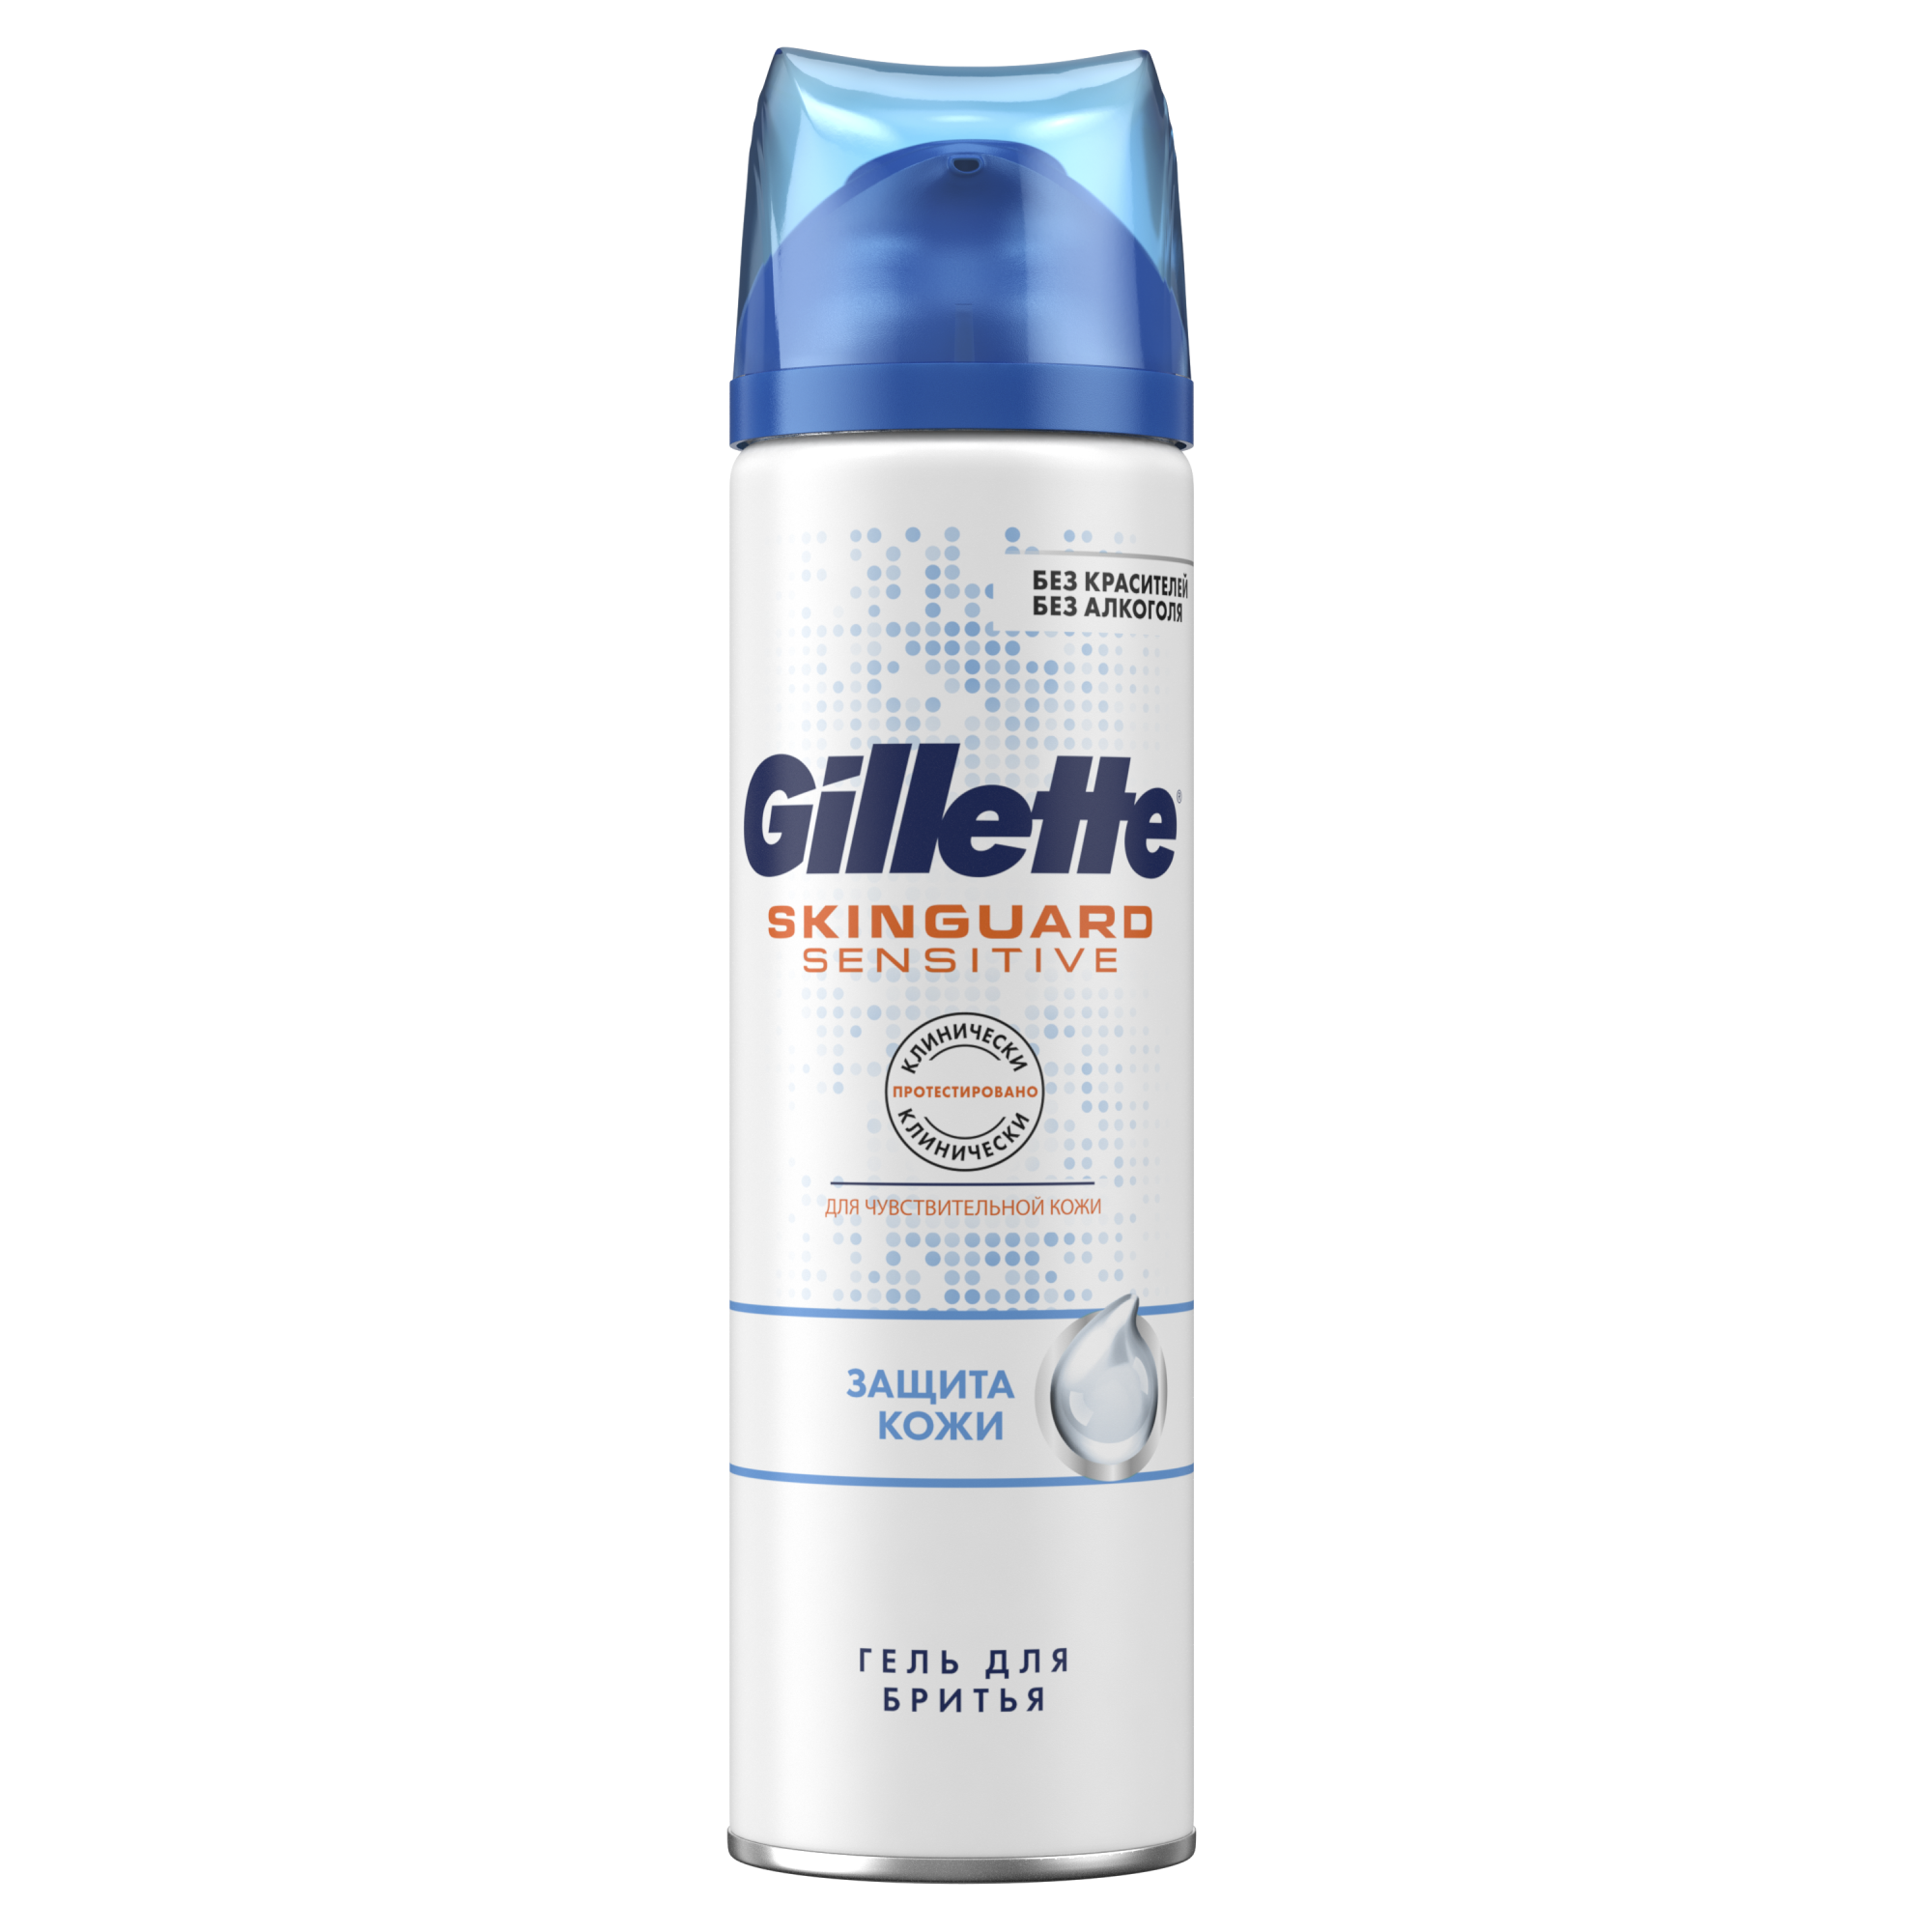 Gillette пена для бритья для чувствительной кожи 200мл